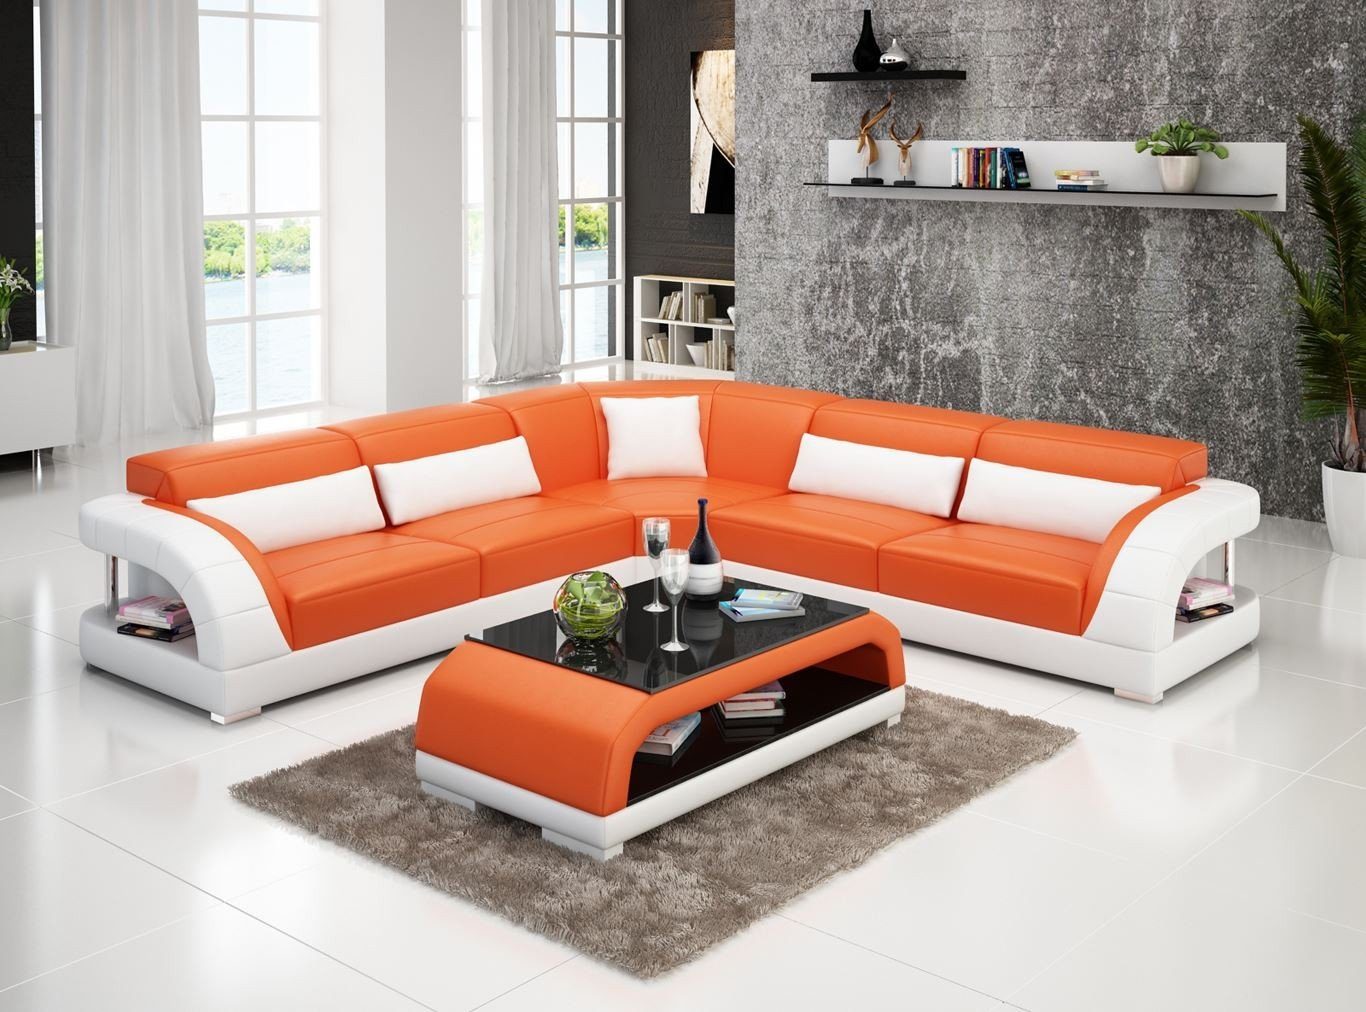 Ecksofa Modern, Garnitur Leder Ecksofa Wohnlandschaft Europe Made in Orange/Weiß Design Couch JVmoebel